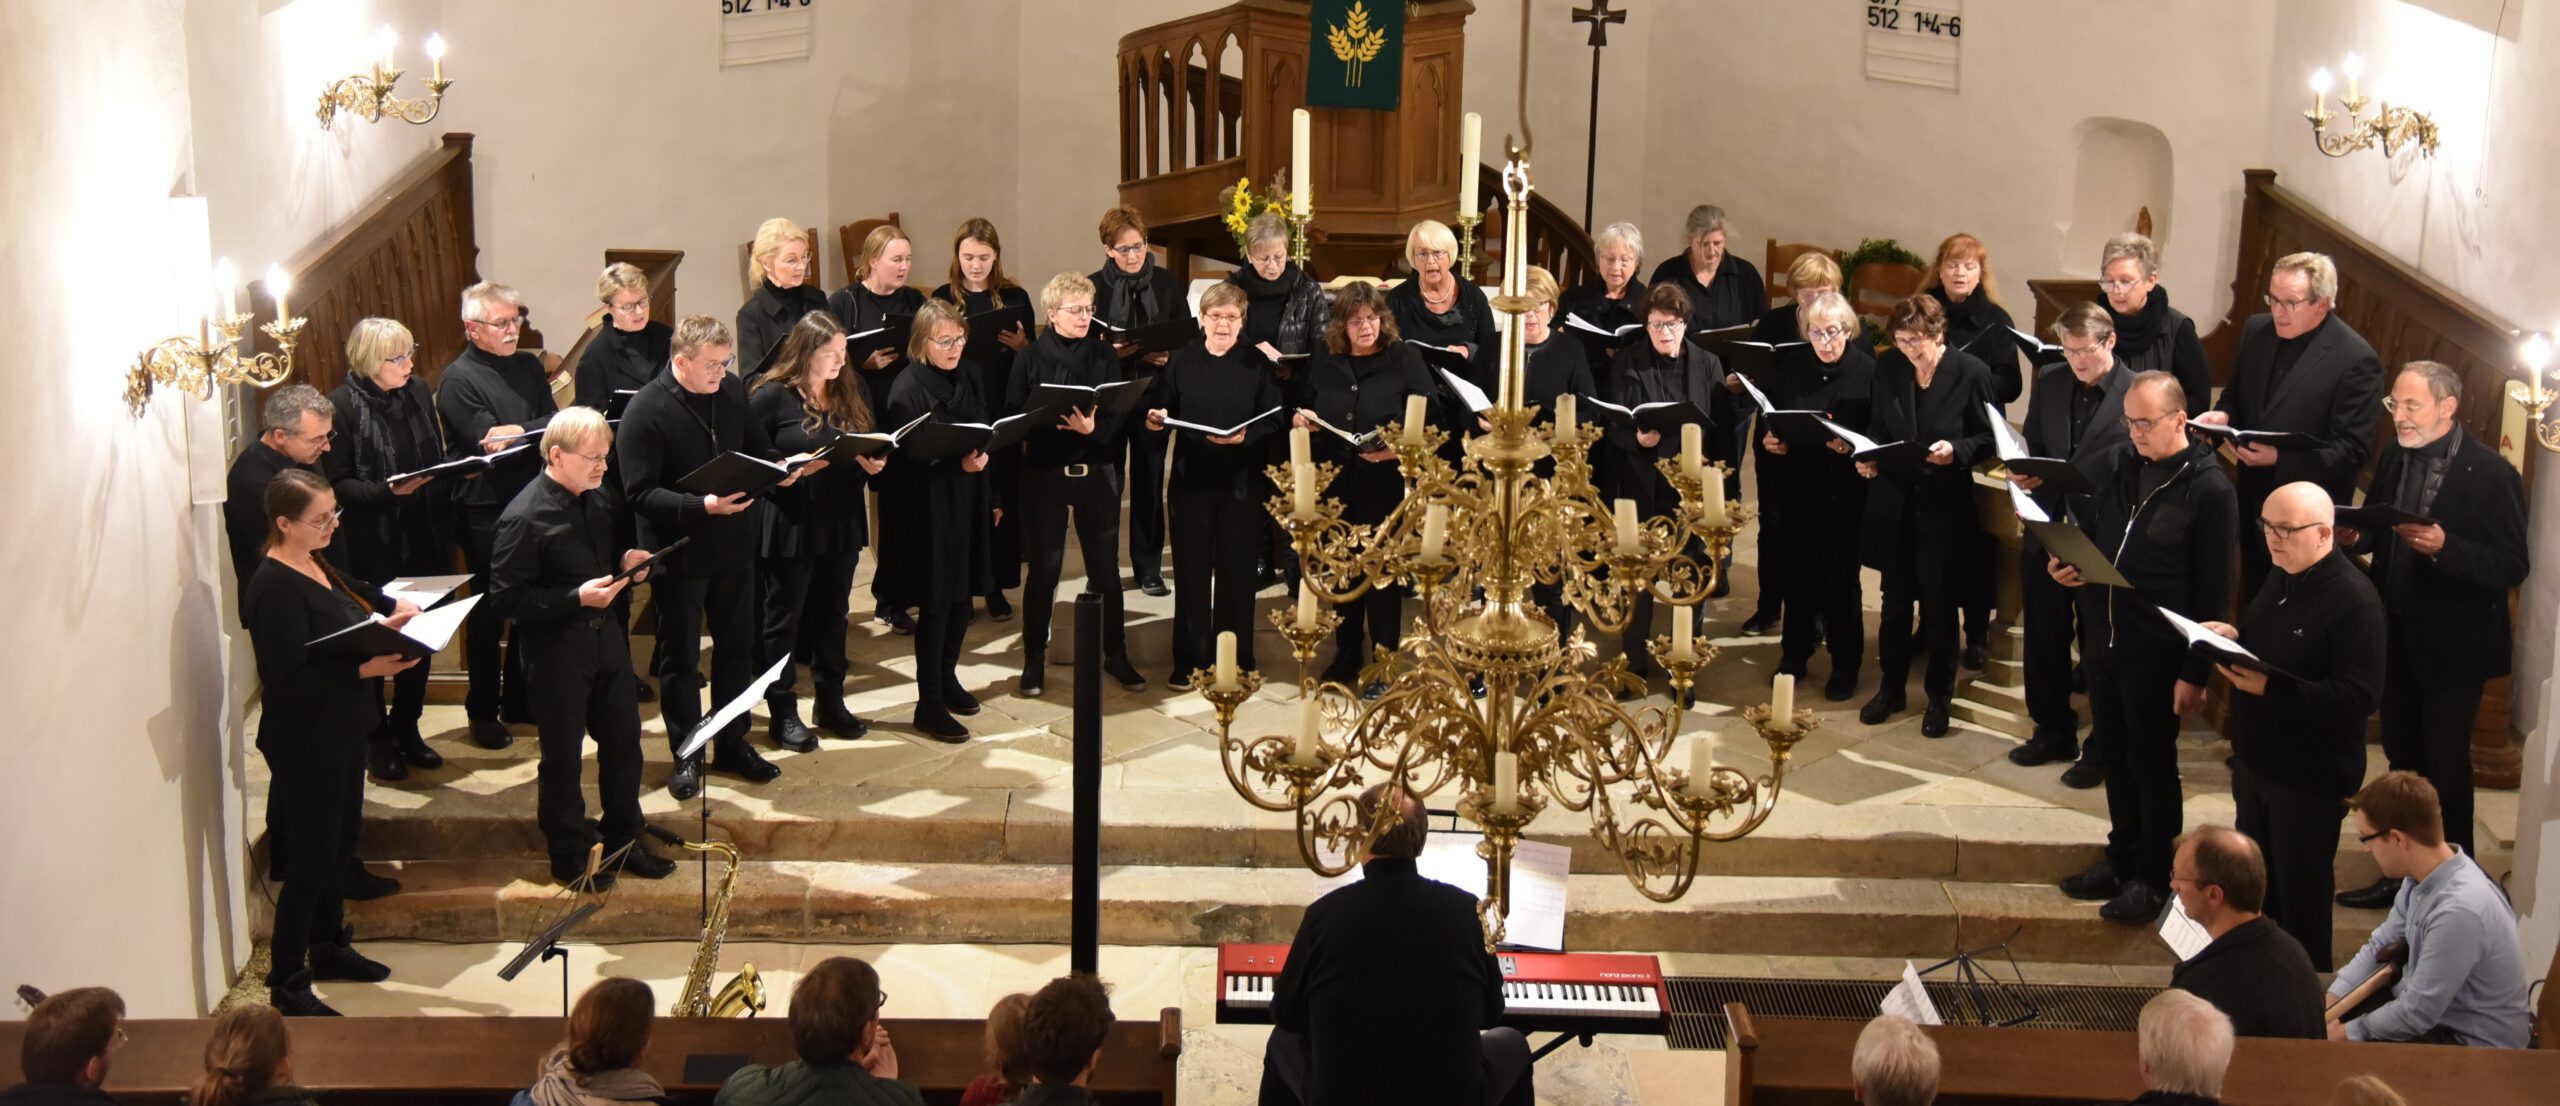 Miteinander - Der Ökumenische Chor aus Tecklenburg